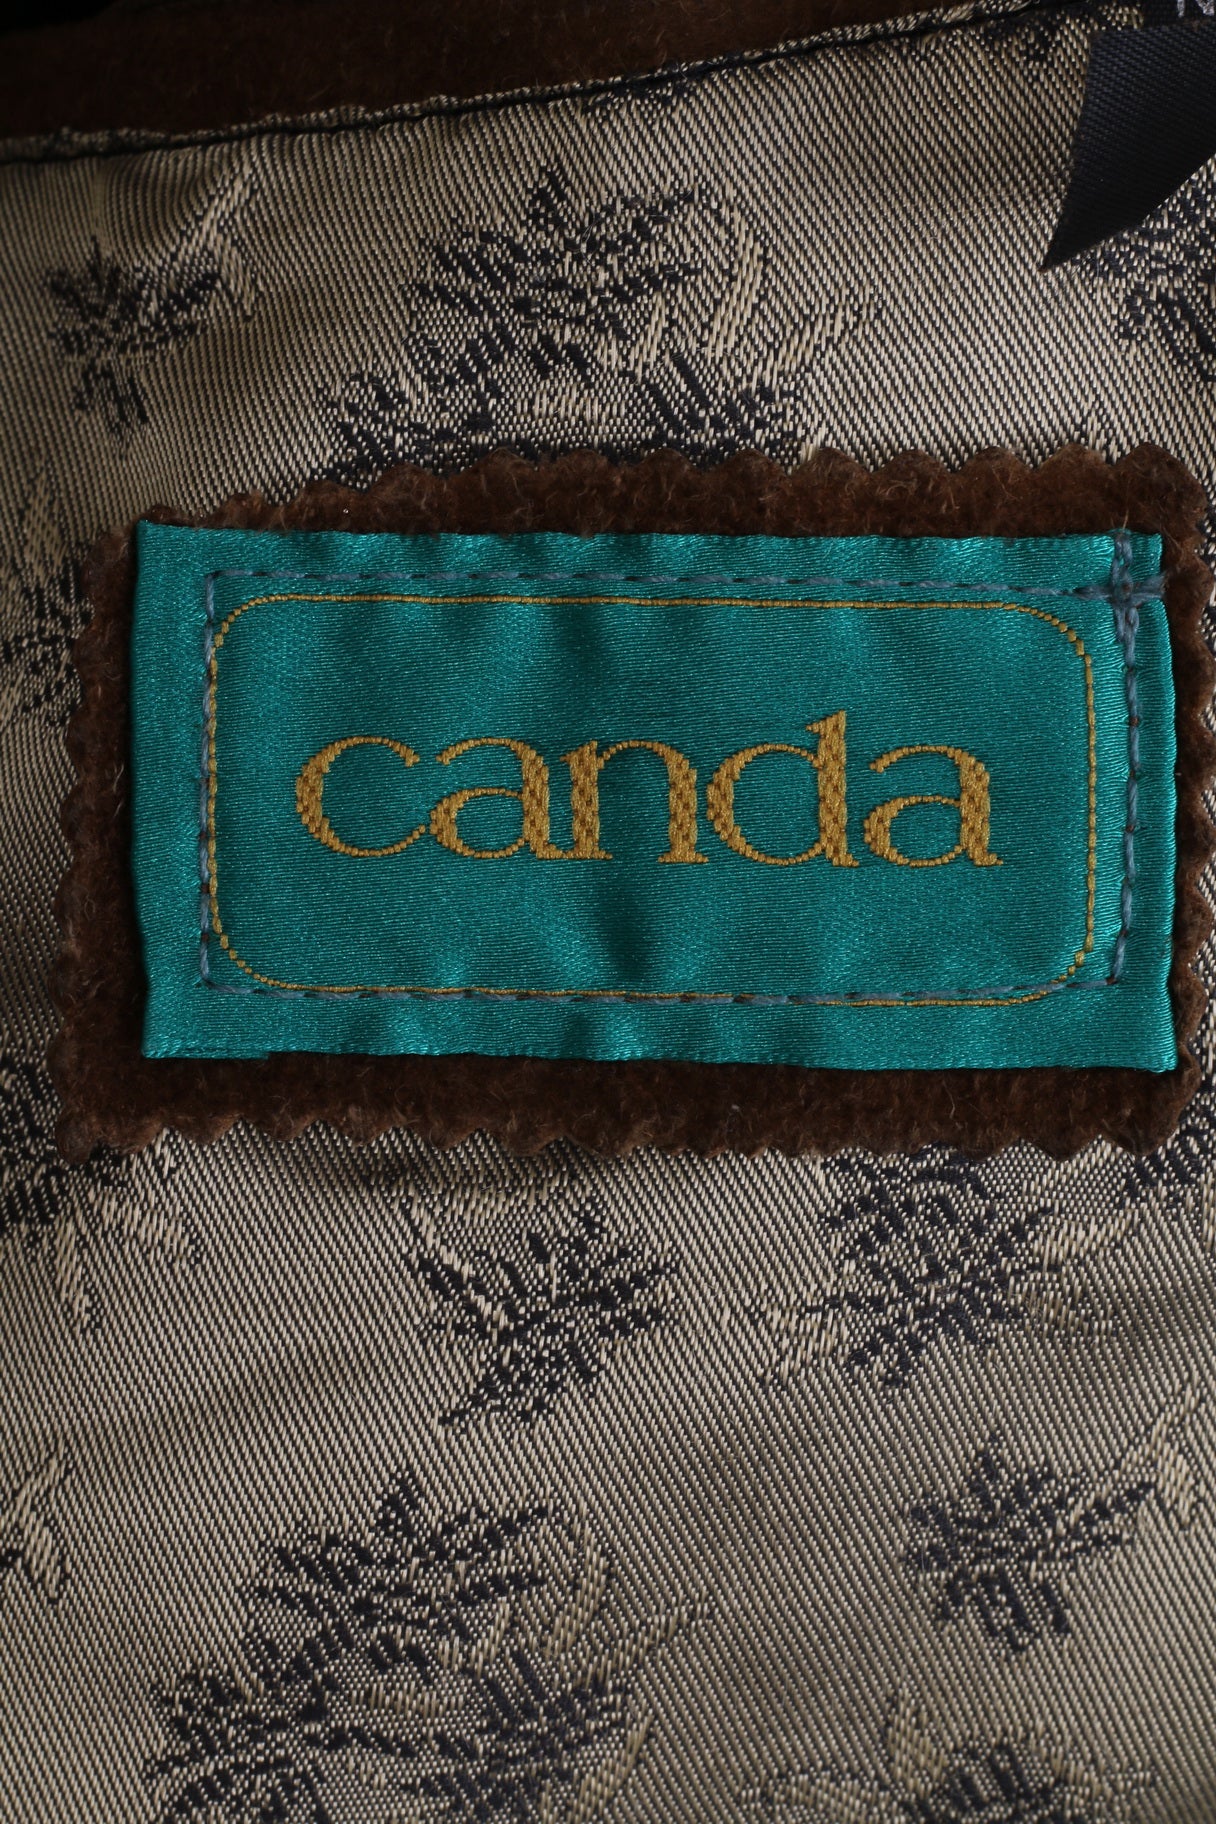 Canada C&A Men 44 54 L Blazer Vintage Leather Camel Single Breasted Suede Shoulder Pads Jacket